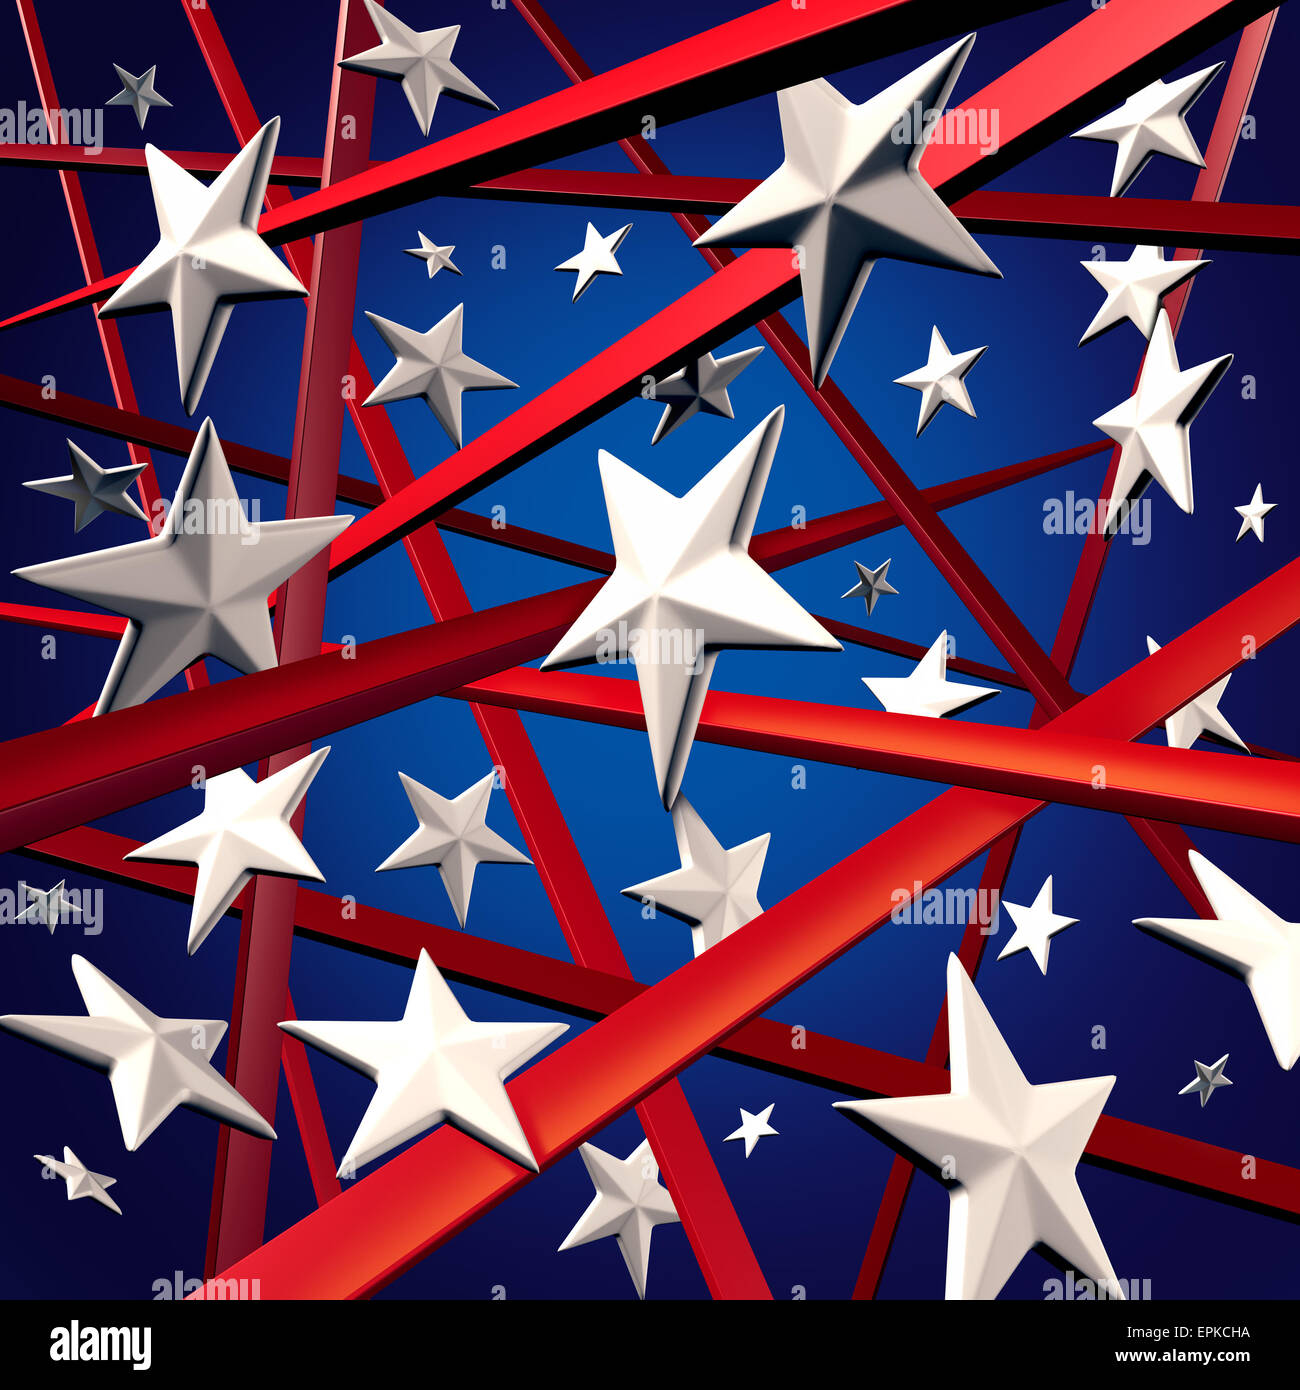 Amerikanischen Stars und Stripes und USA drei Dimenaional Flagge Hintergrund Design-Element mit roten weißen und blauen Farben feiert vierten Juli und Wahlzeit. Stockfoto